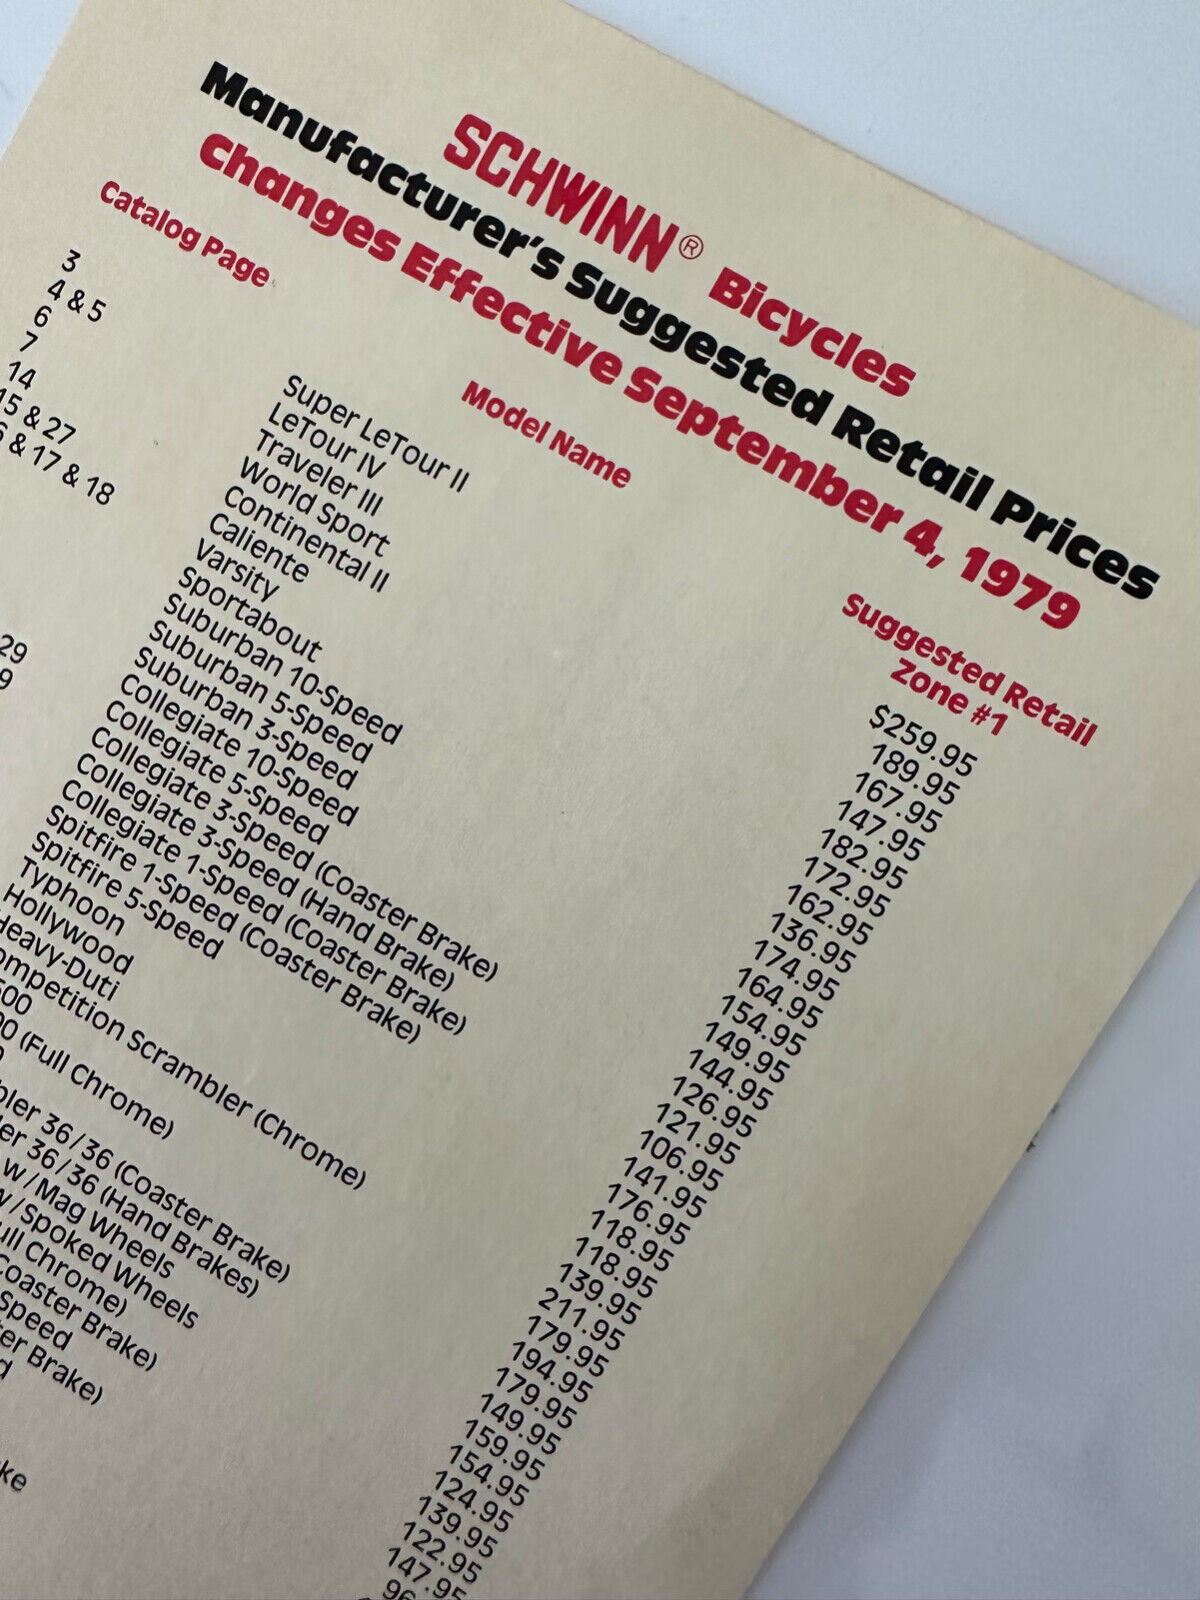 1979 Schwinn Consumer Catalog Price List